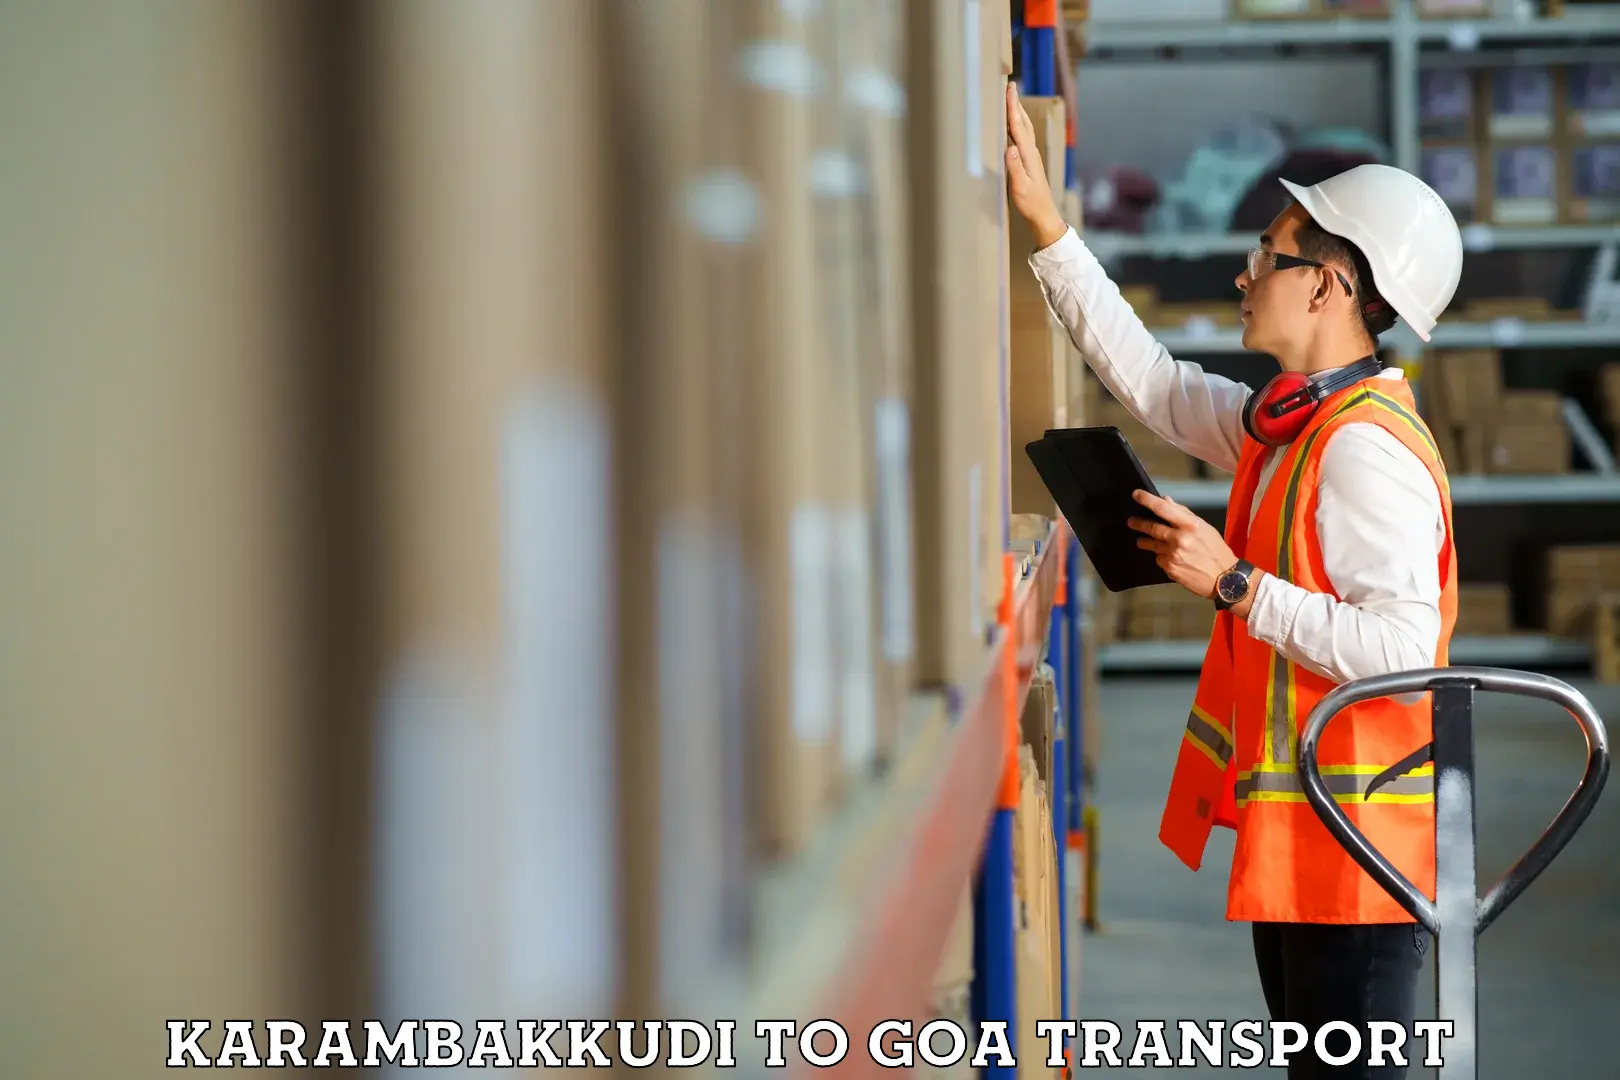 Nearest transport service Karambakkudi to Mormugao Port